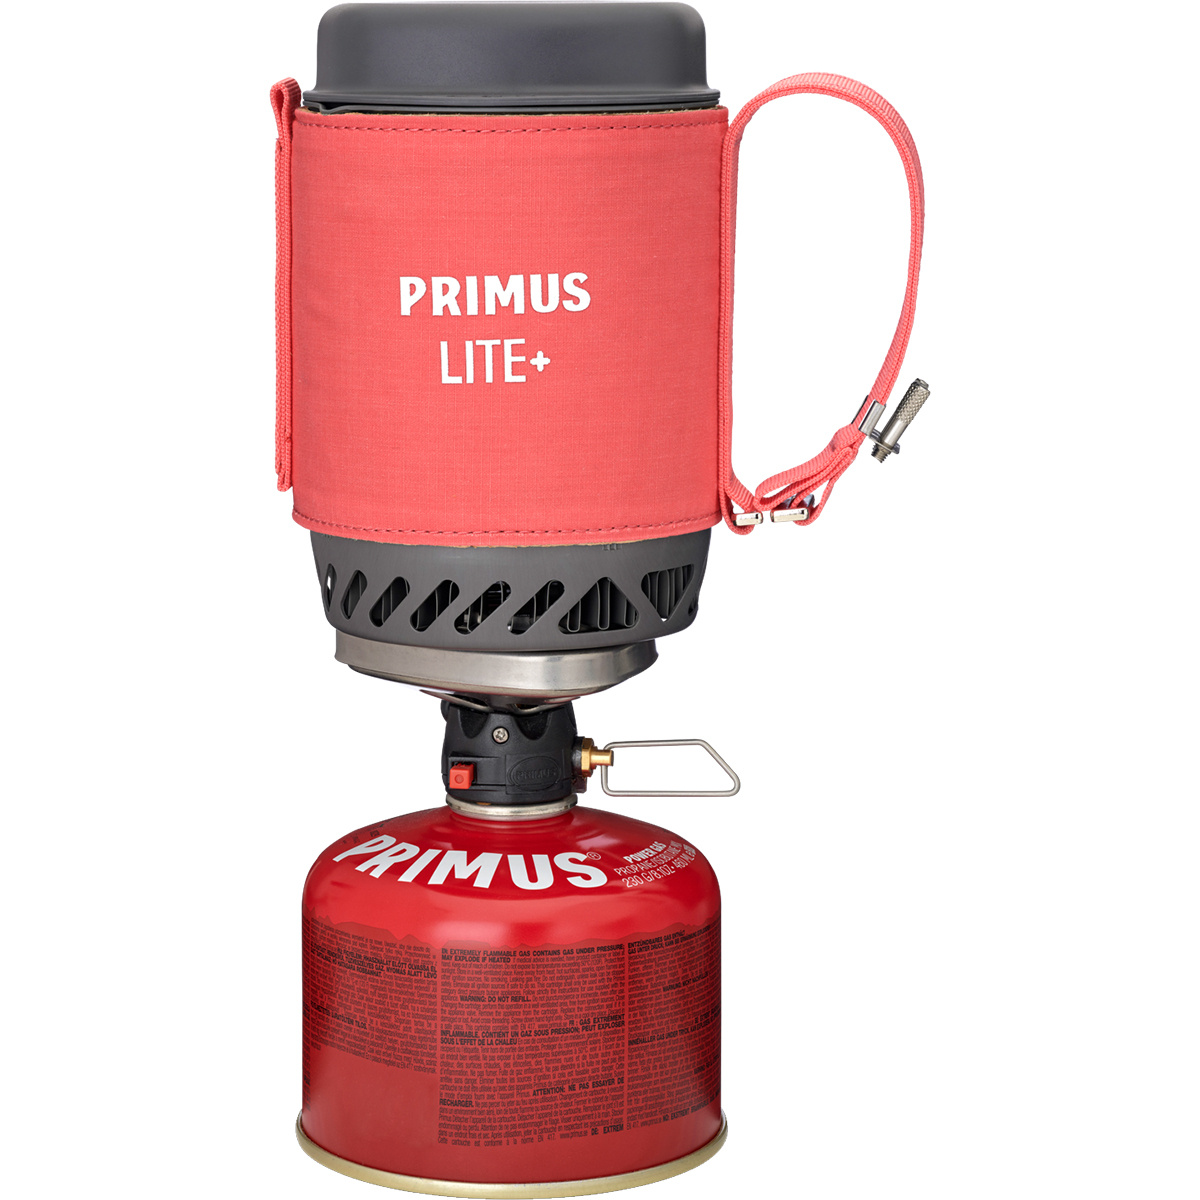 Primus Lite Plus Kocher von Primus